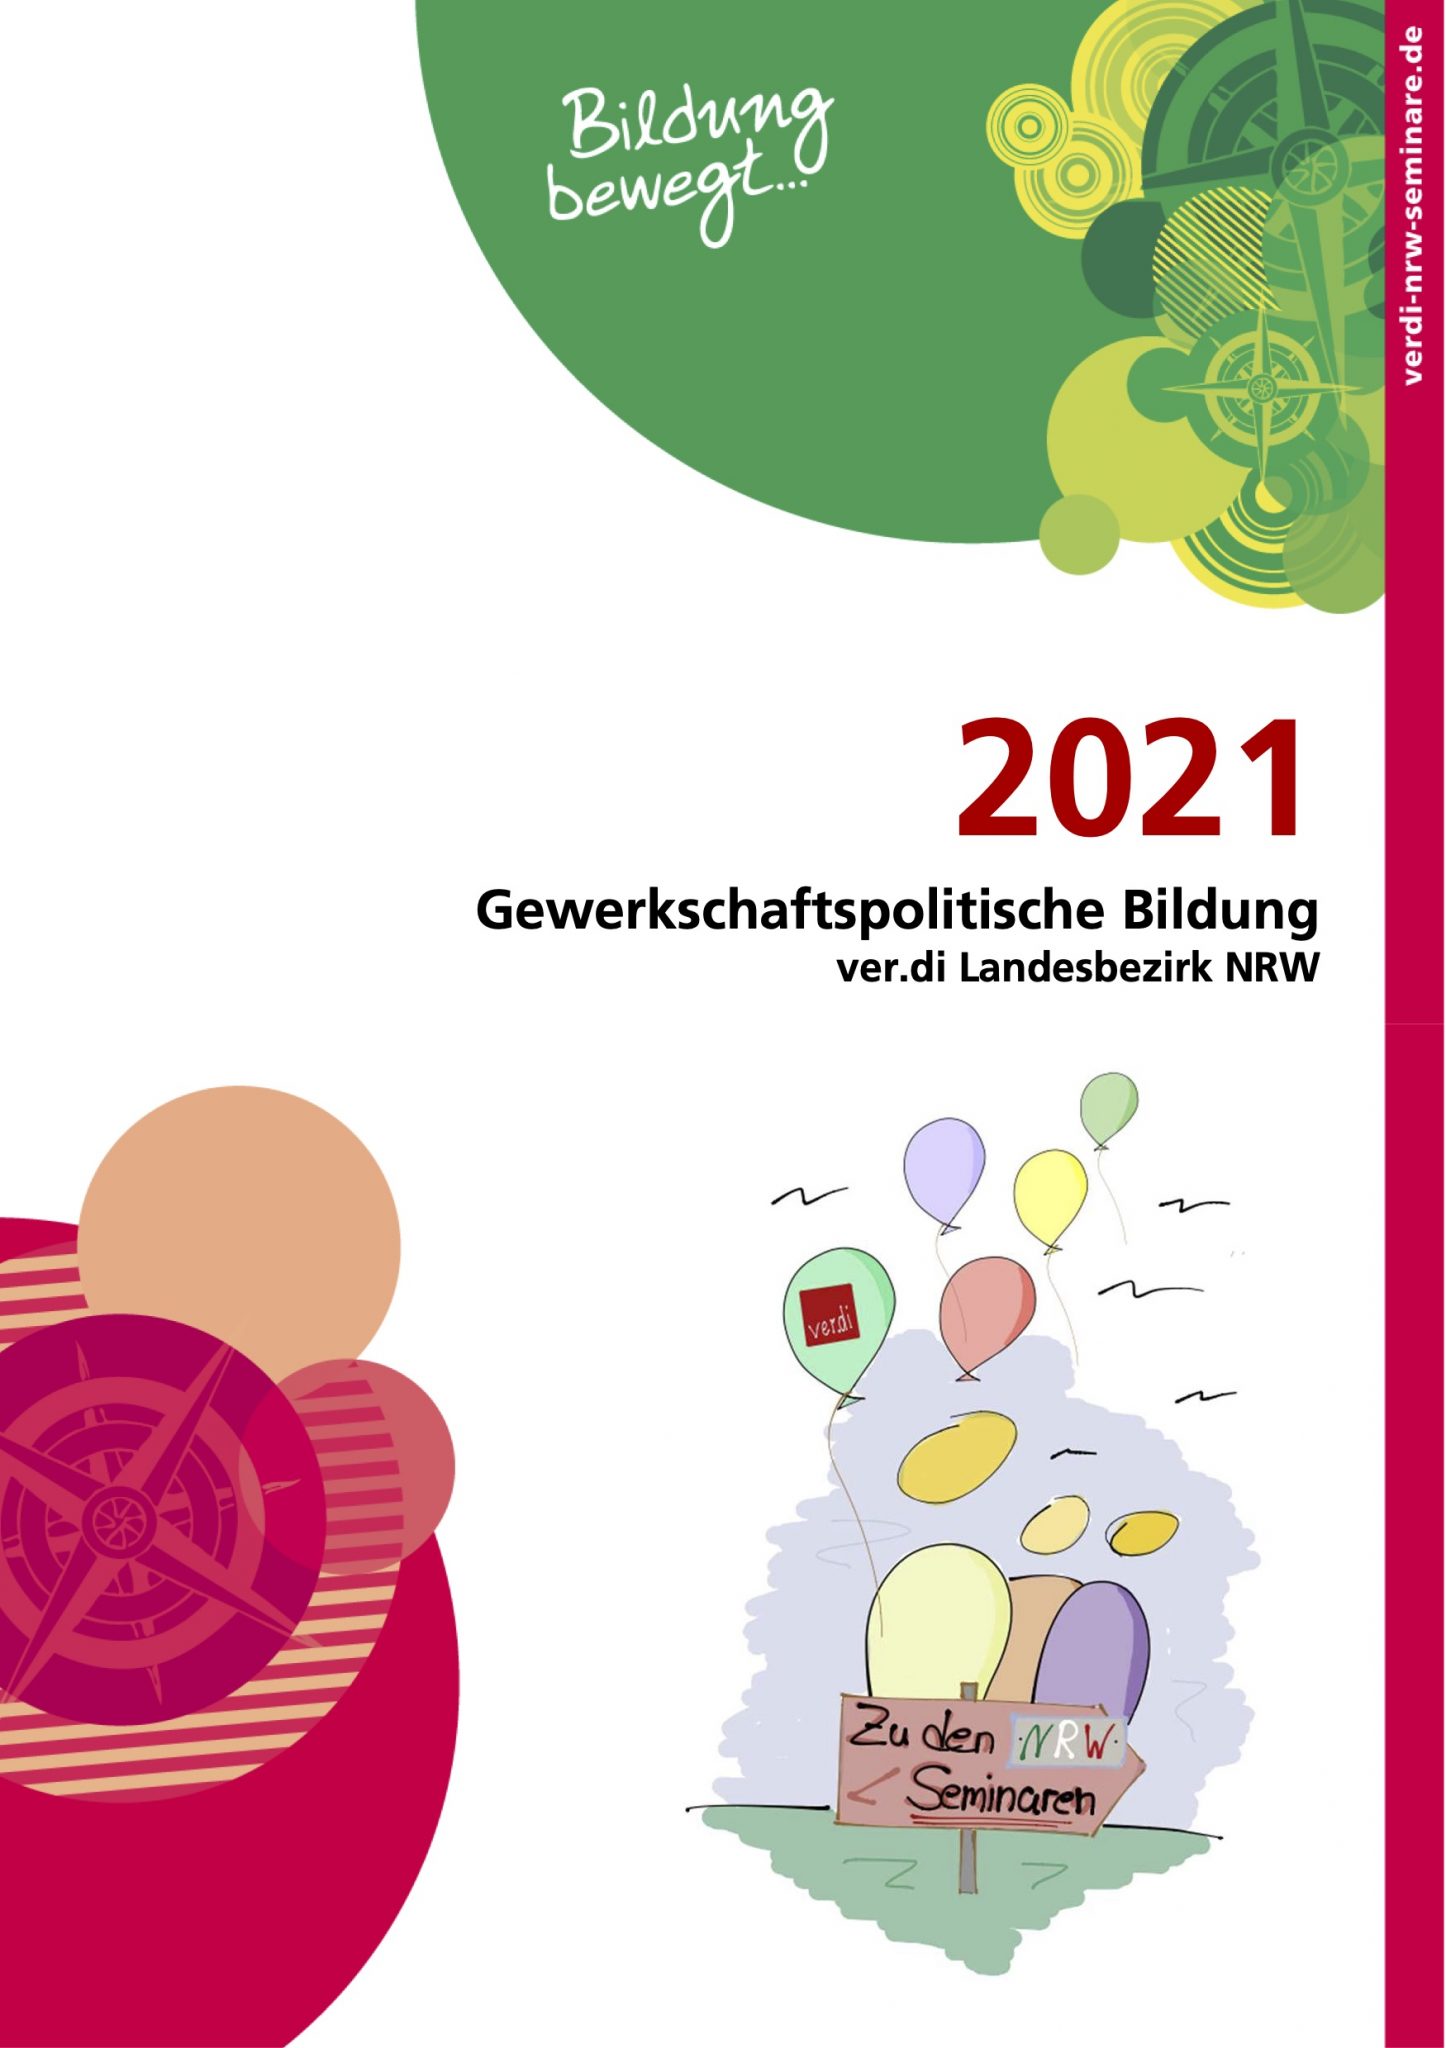 ver.di NRW: Bildungsprogramm 2021 – Jetzt Bildungsurlaub nutzen! – ver